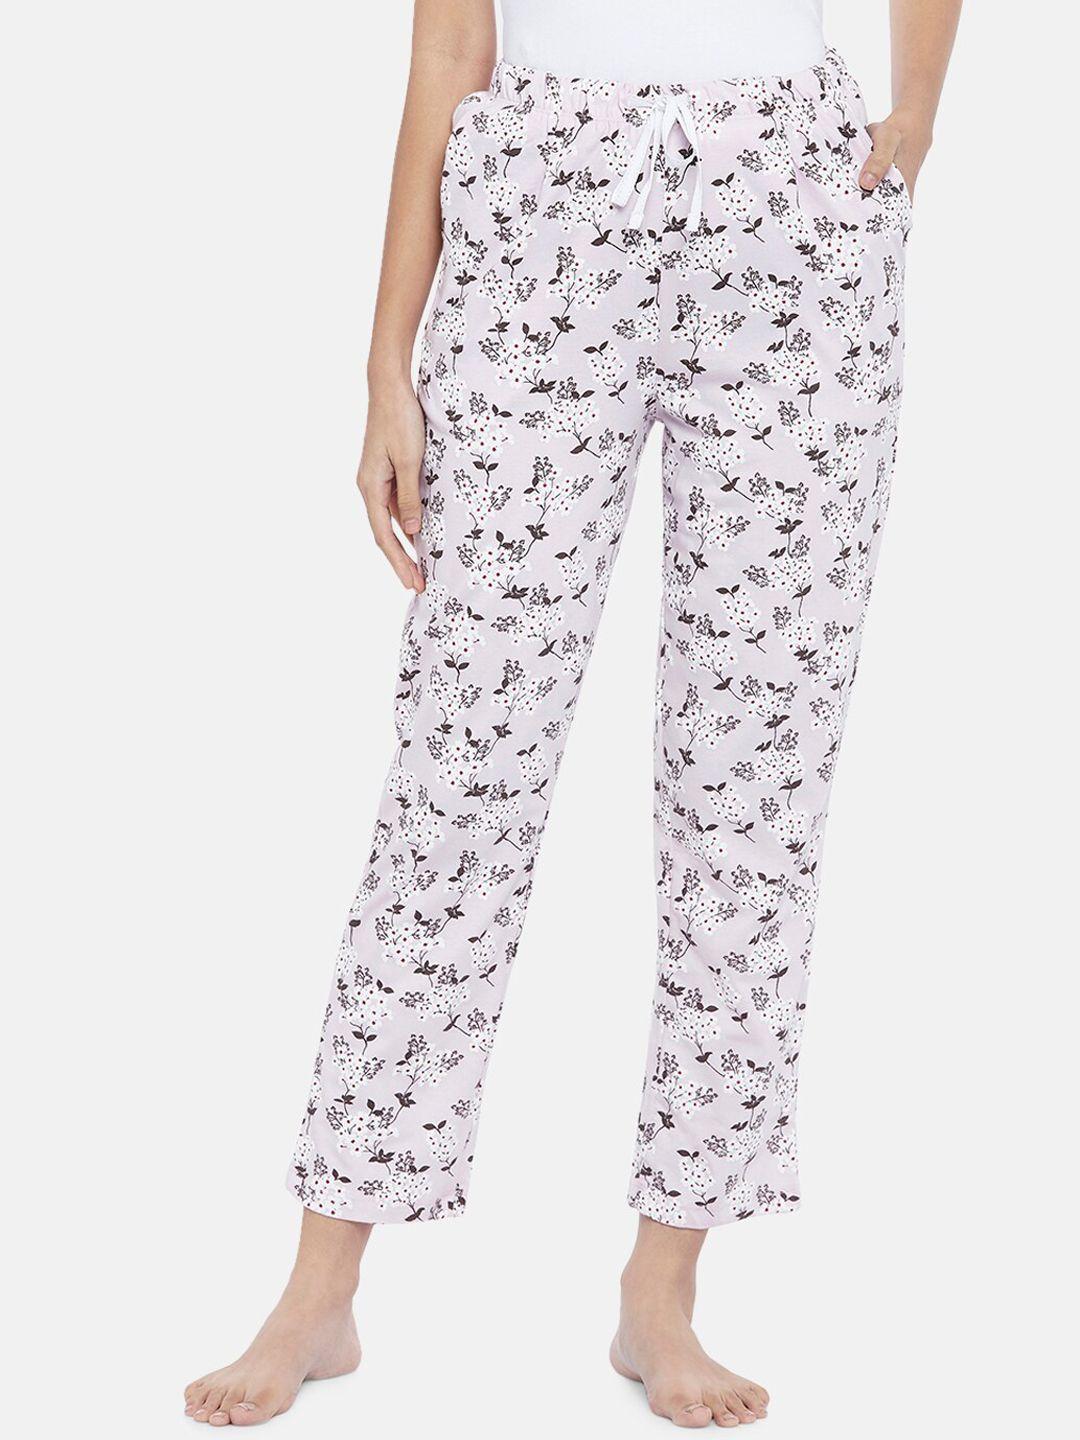 dreamz by pantaloons women lavender printed cotton lounge pants